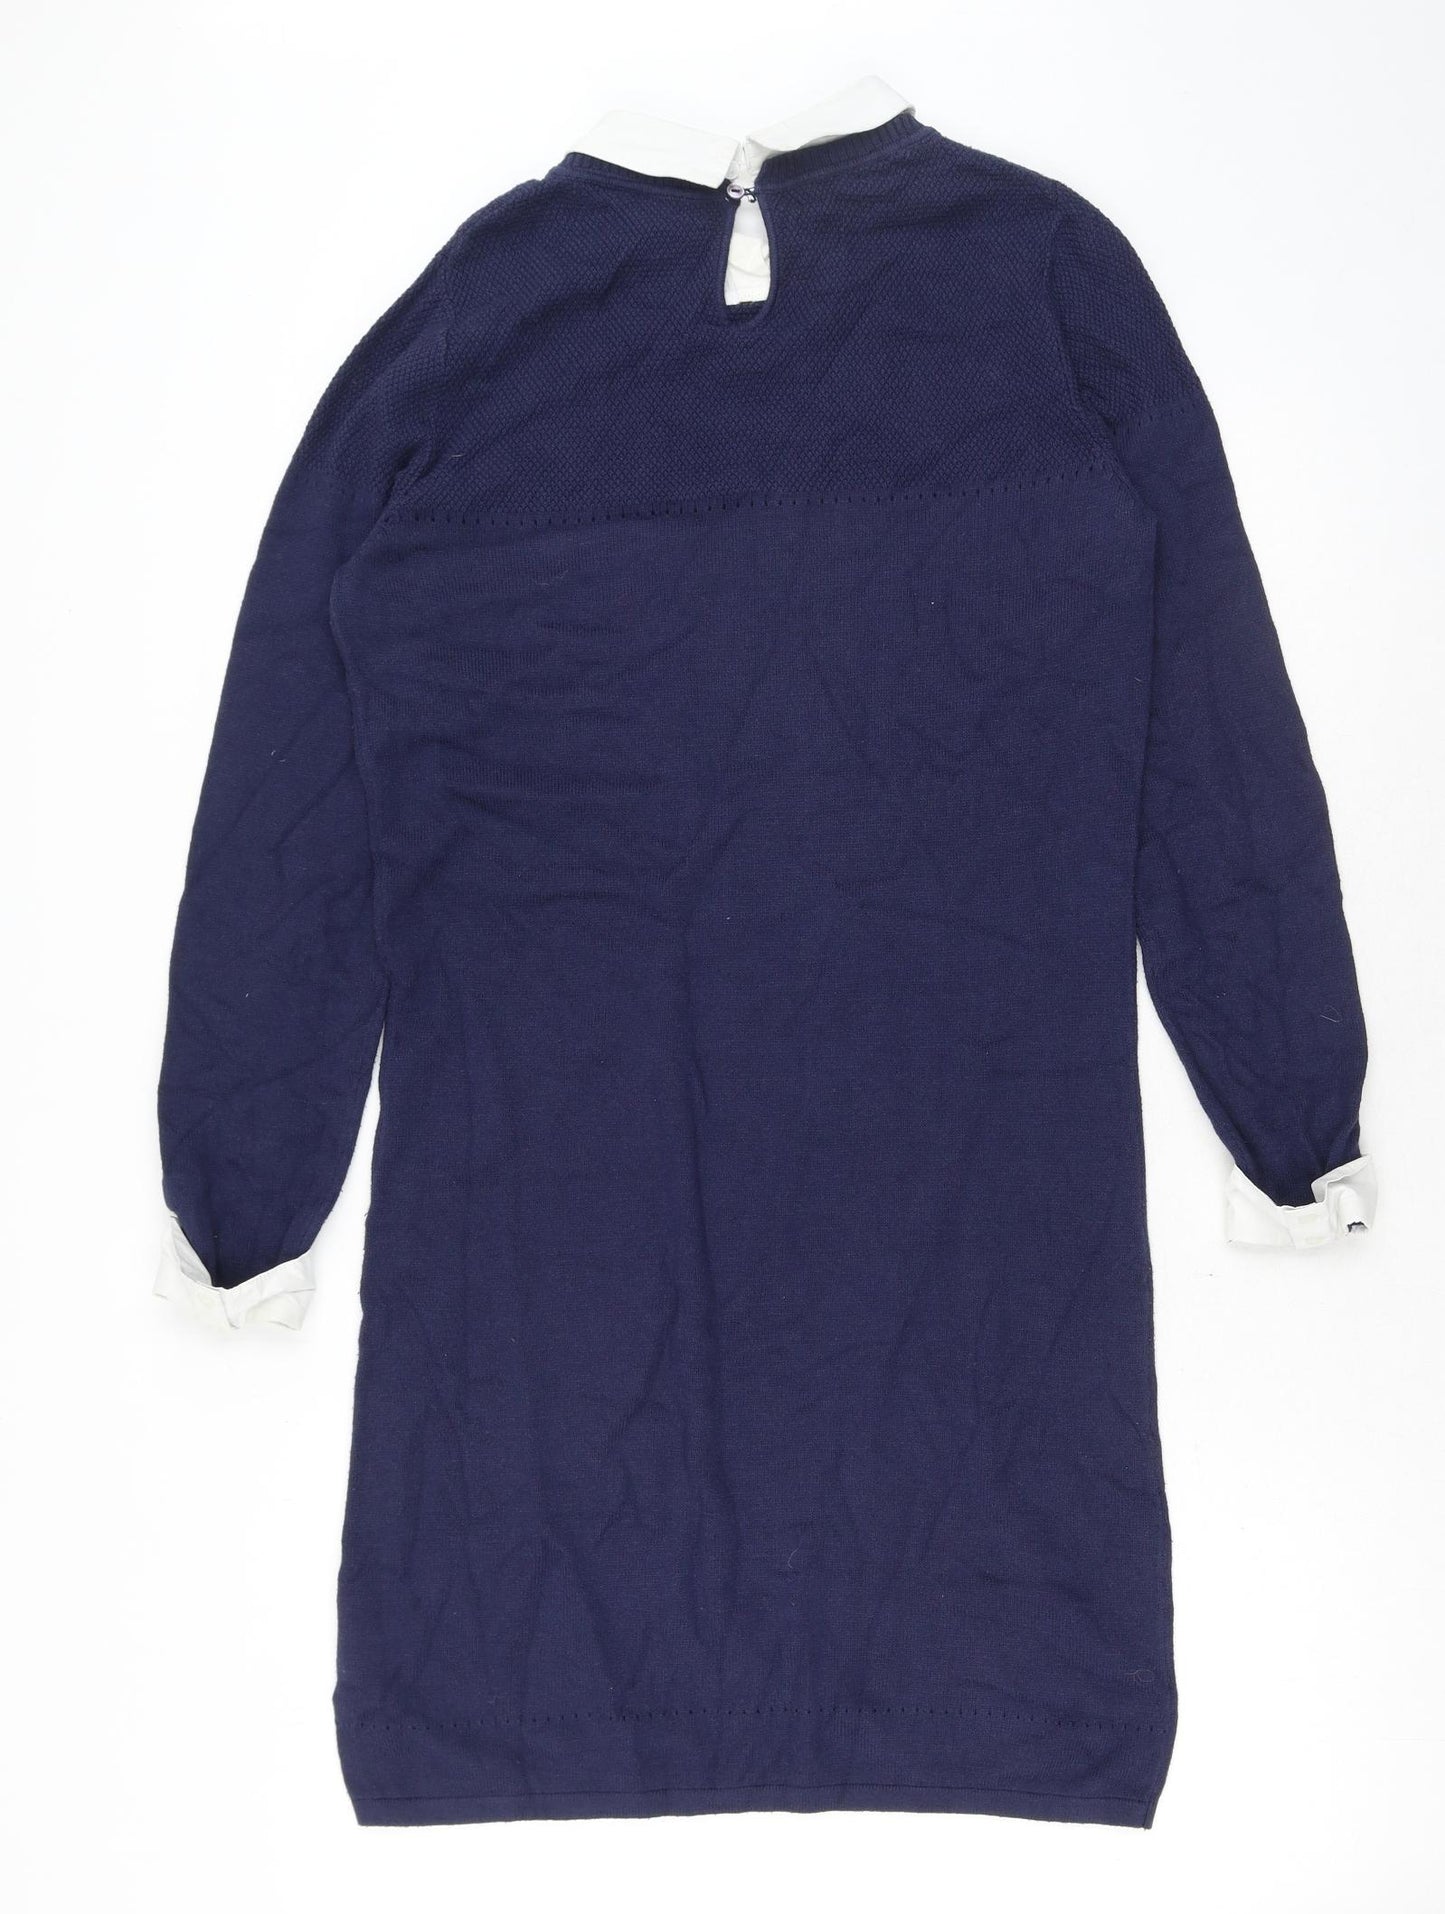 Dickins & Jones Womens Blue Cotton Jumper Dress Size S Collared Button